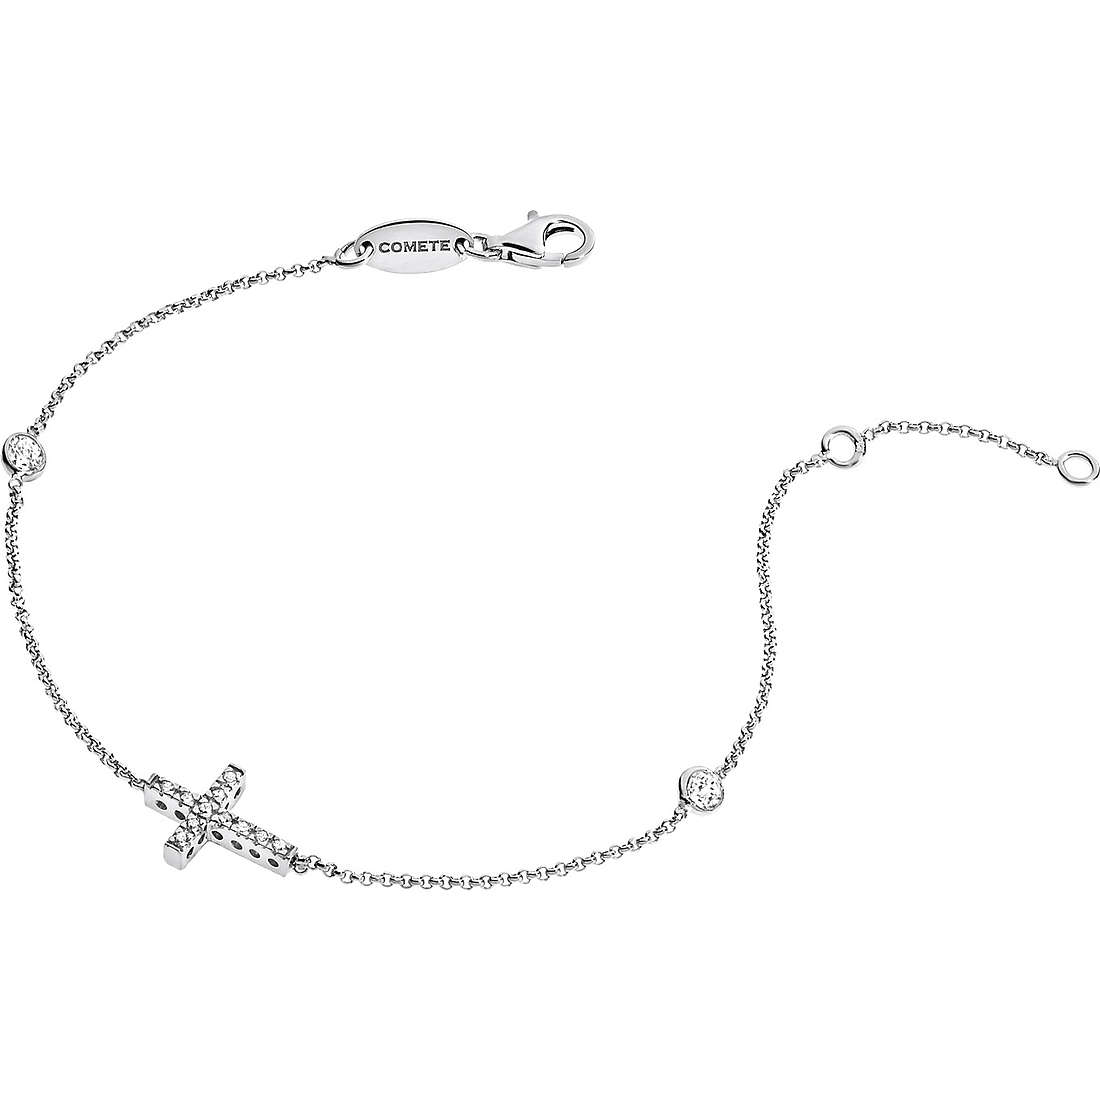 Bracelet Women Comete Gioielli Silver 925 BRA 119